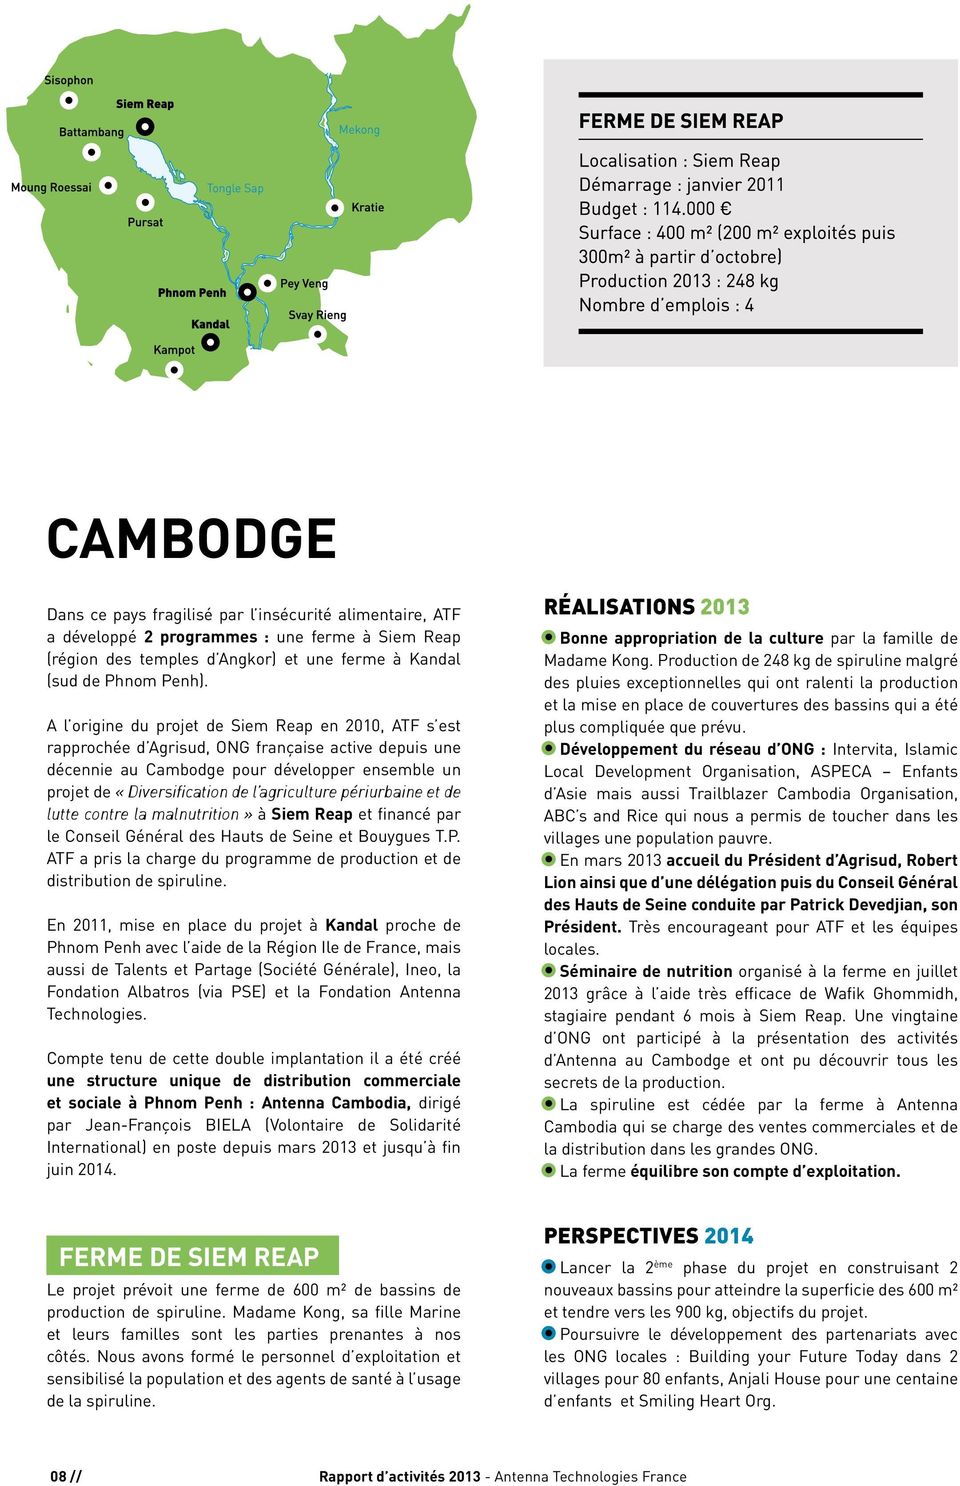 agriculture périurbaine et de lutte contre la malnutrition» à Siem Reap et financé par le Conseil Général des Hauts de Seine et Bouygues T.P.